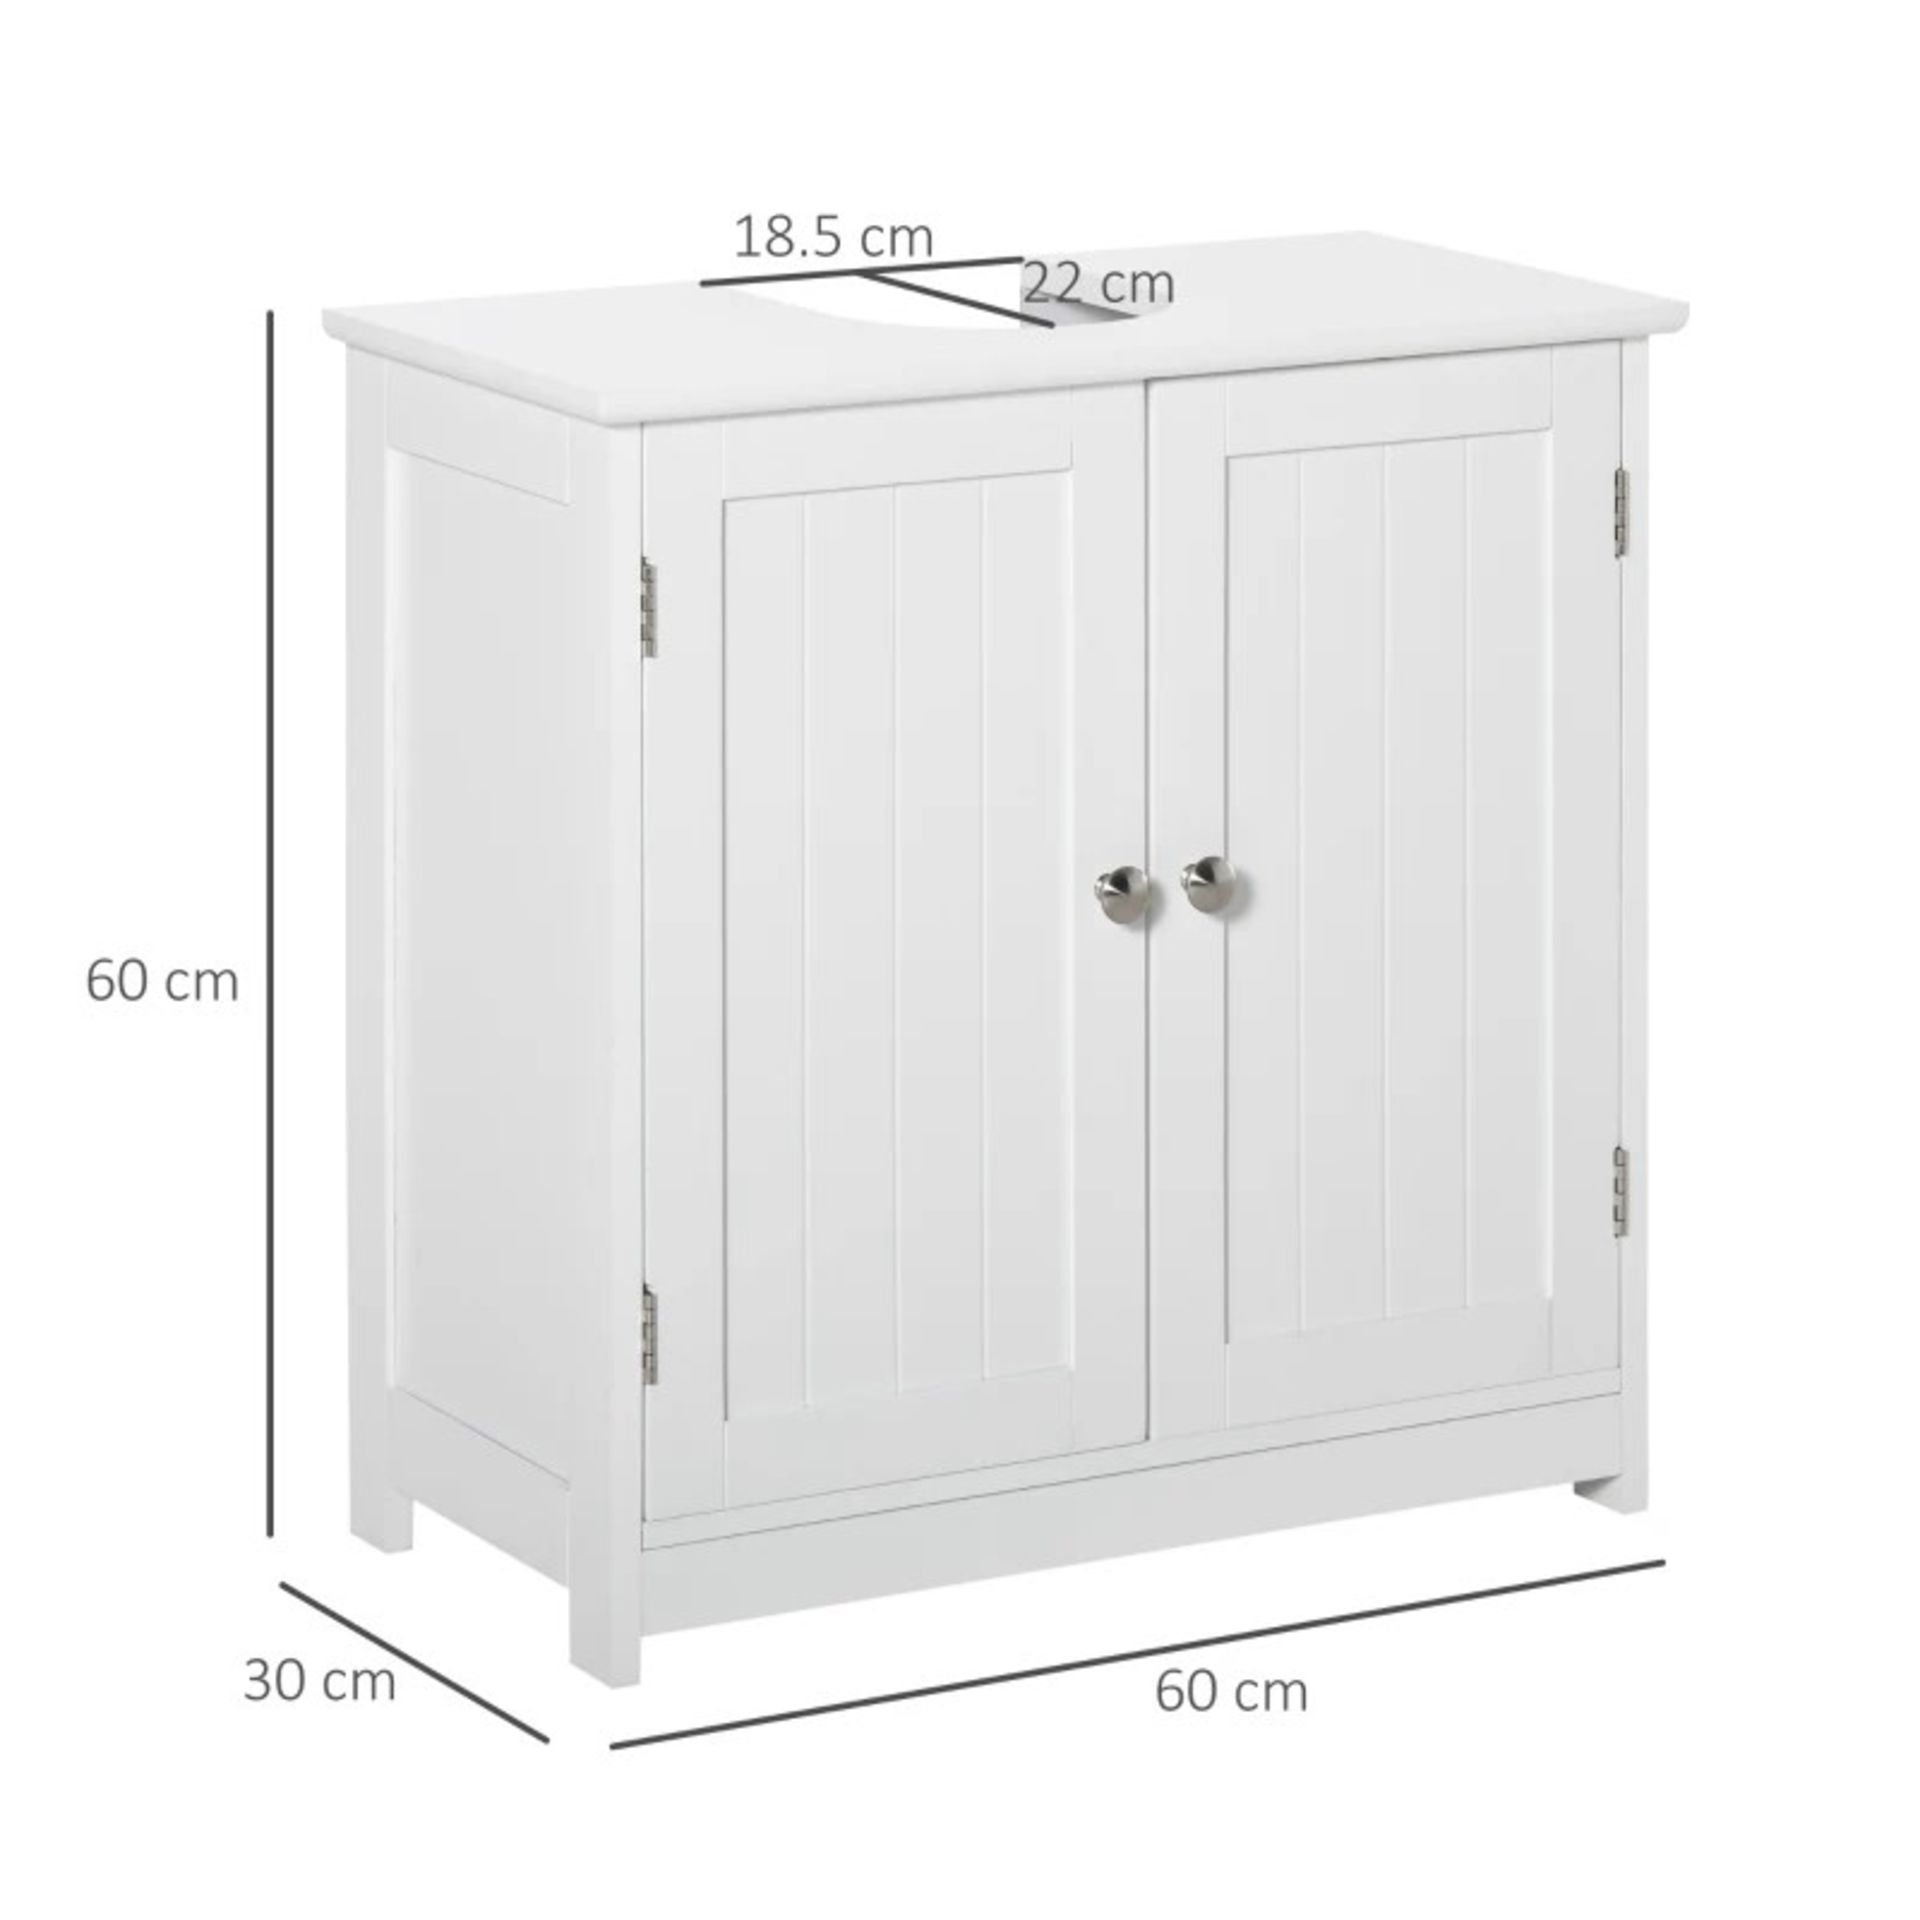 RRP £68.99 - kleankin 60x60cm Under-Sink Storage Cabinet w/ Adjustable Shelf Handle White - - Image 3 of 4